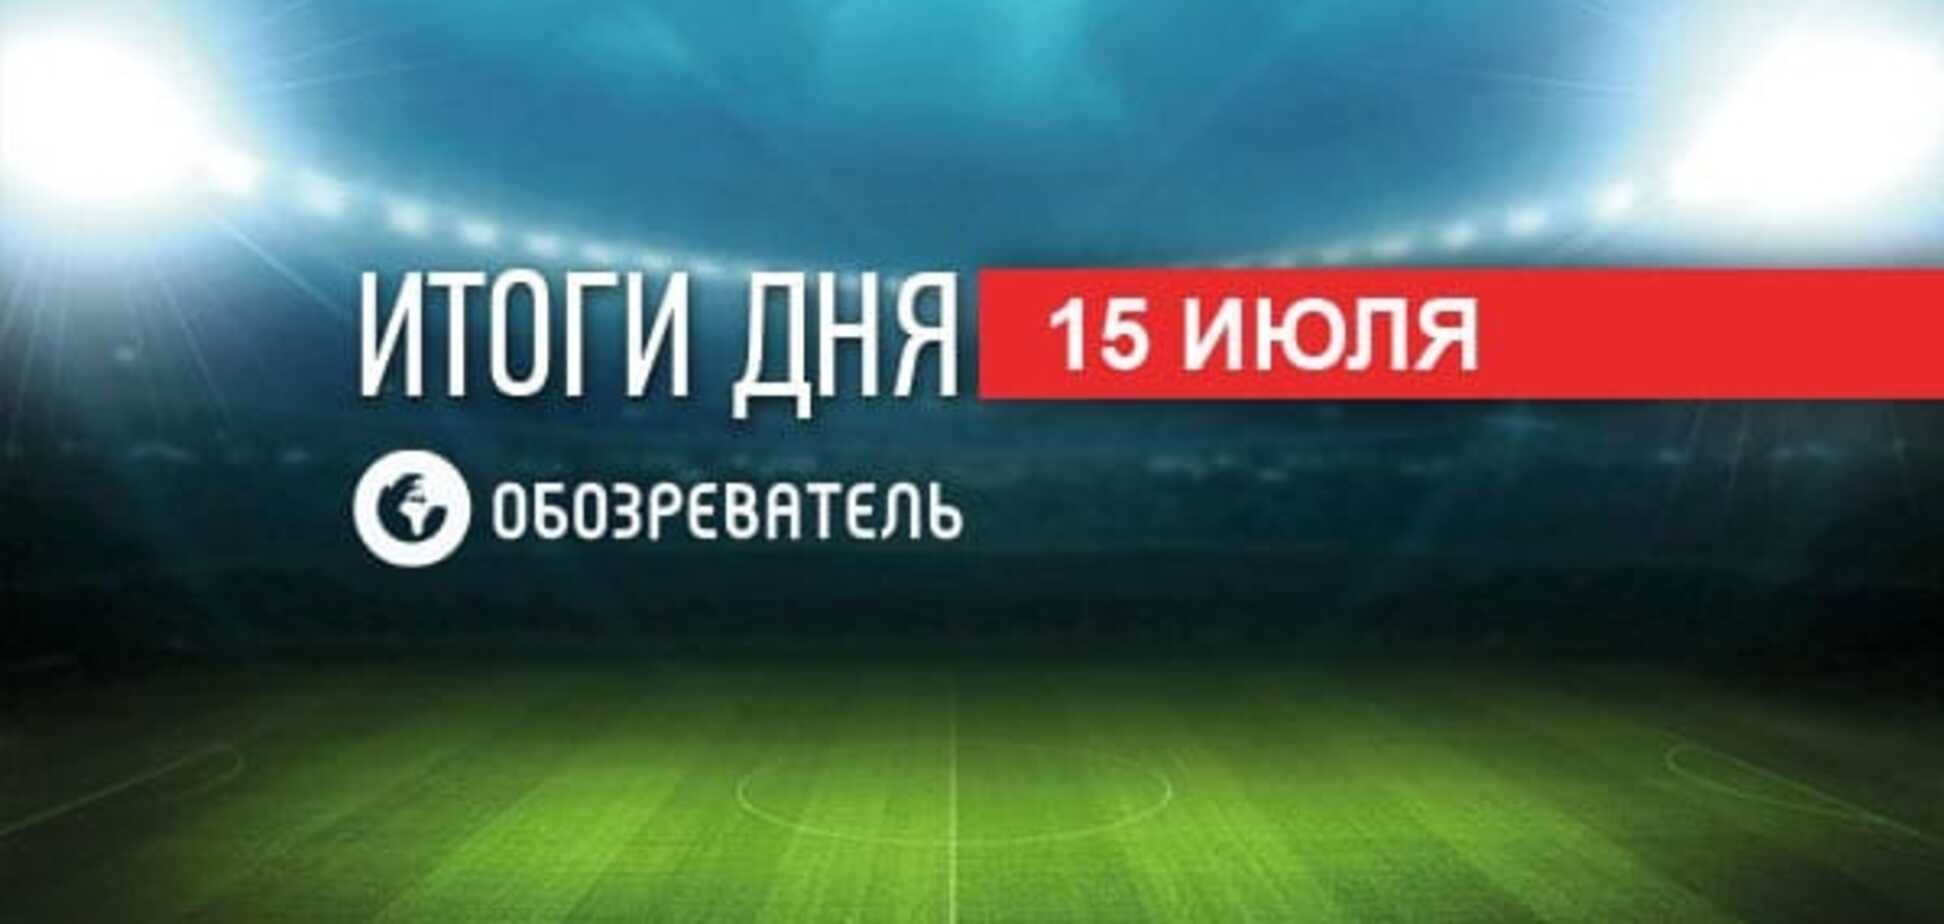 Украинские футбольные клубы узнали соперников в Лиге чемпионов и Лиге Европы. Спортивные итоги 15 июля